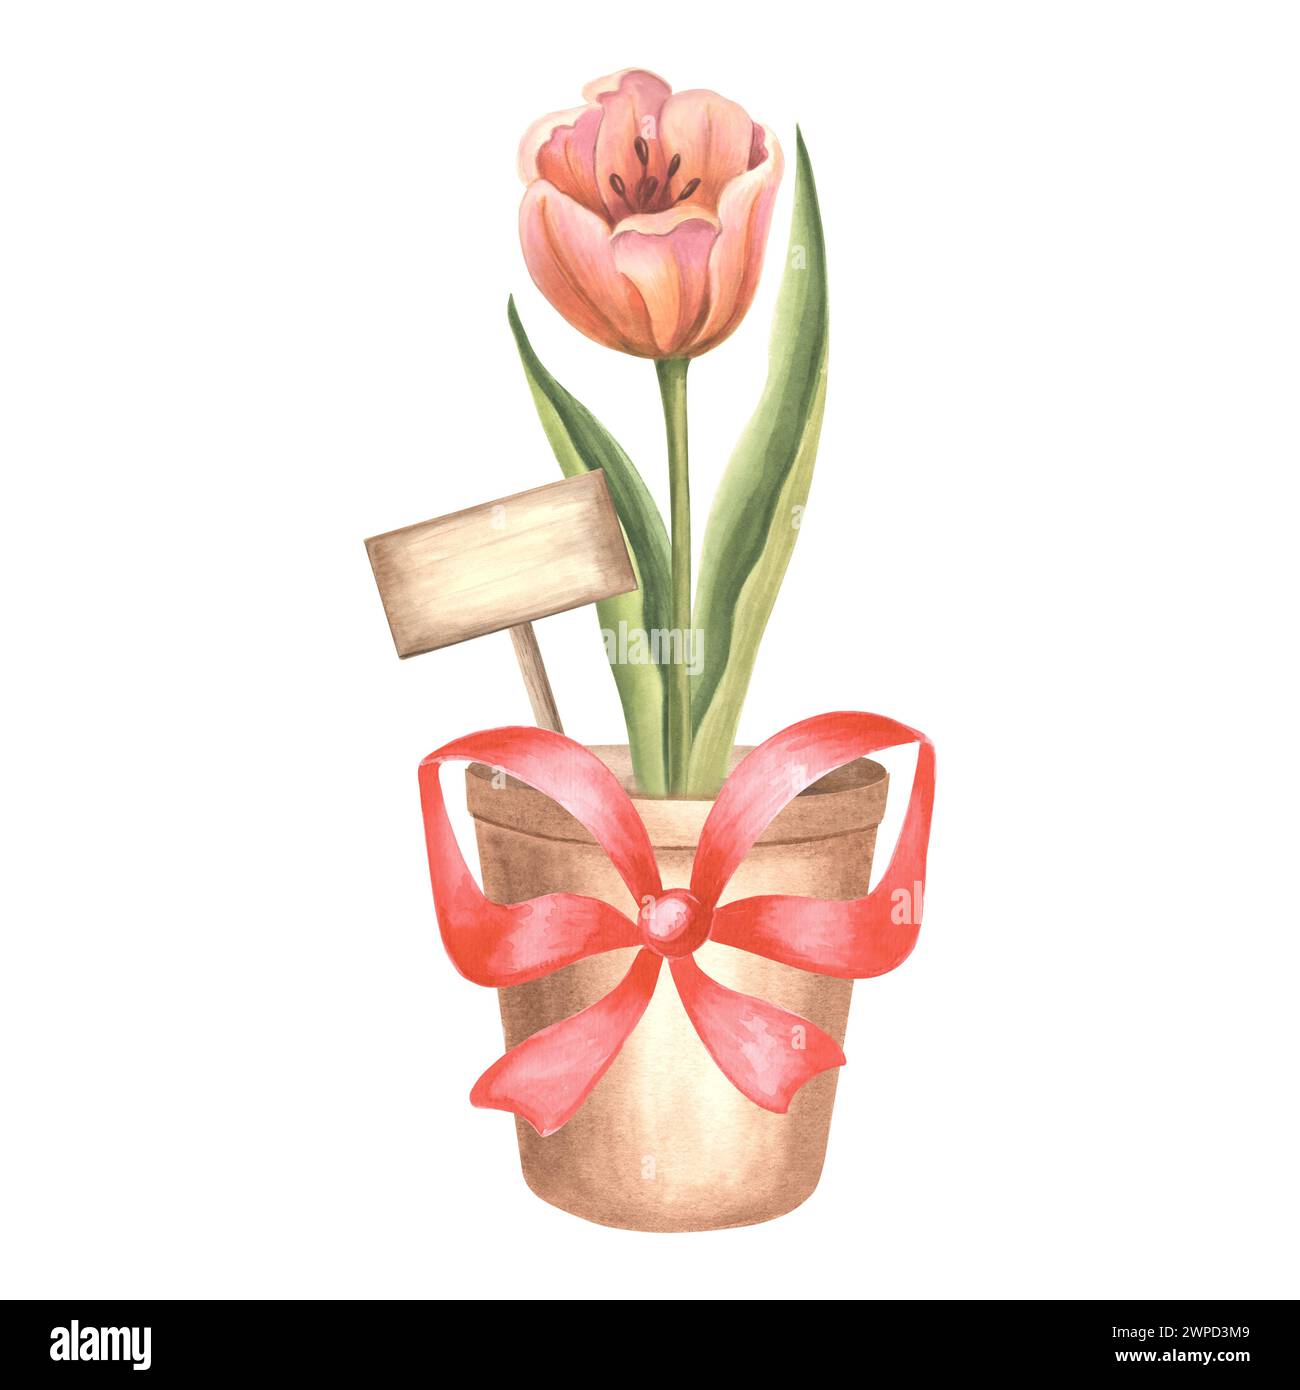 Rote Tulpe und Schild im Blumentopf mit Seidenschleife. Isolierte handgezeichnete Aquarellillustration. Blüte Frühling Gartenblume. Zeichnungsvorlage für Stockfoto